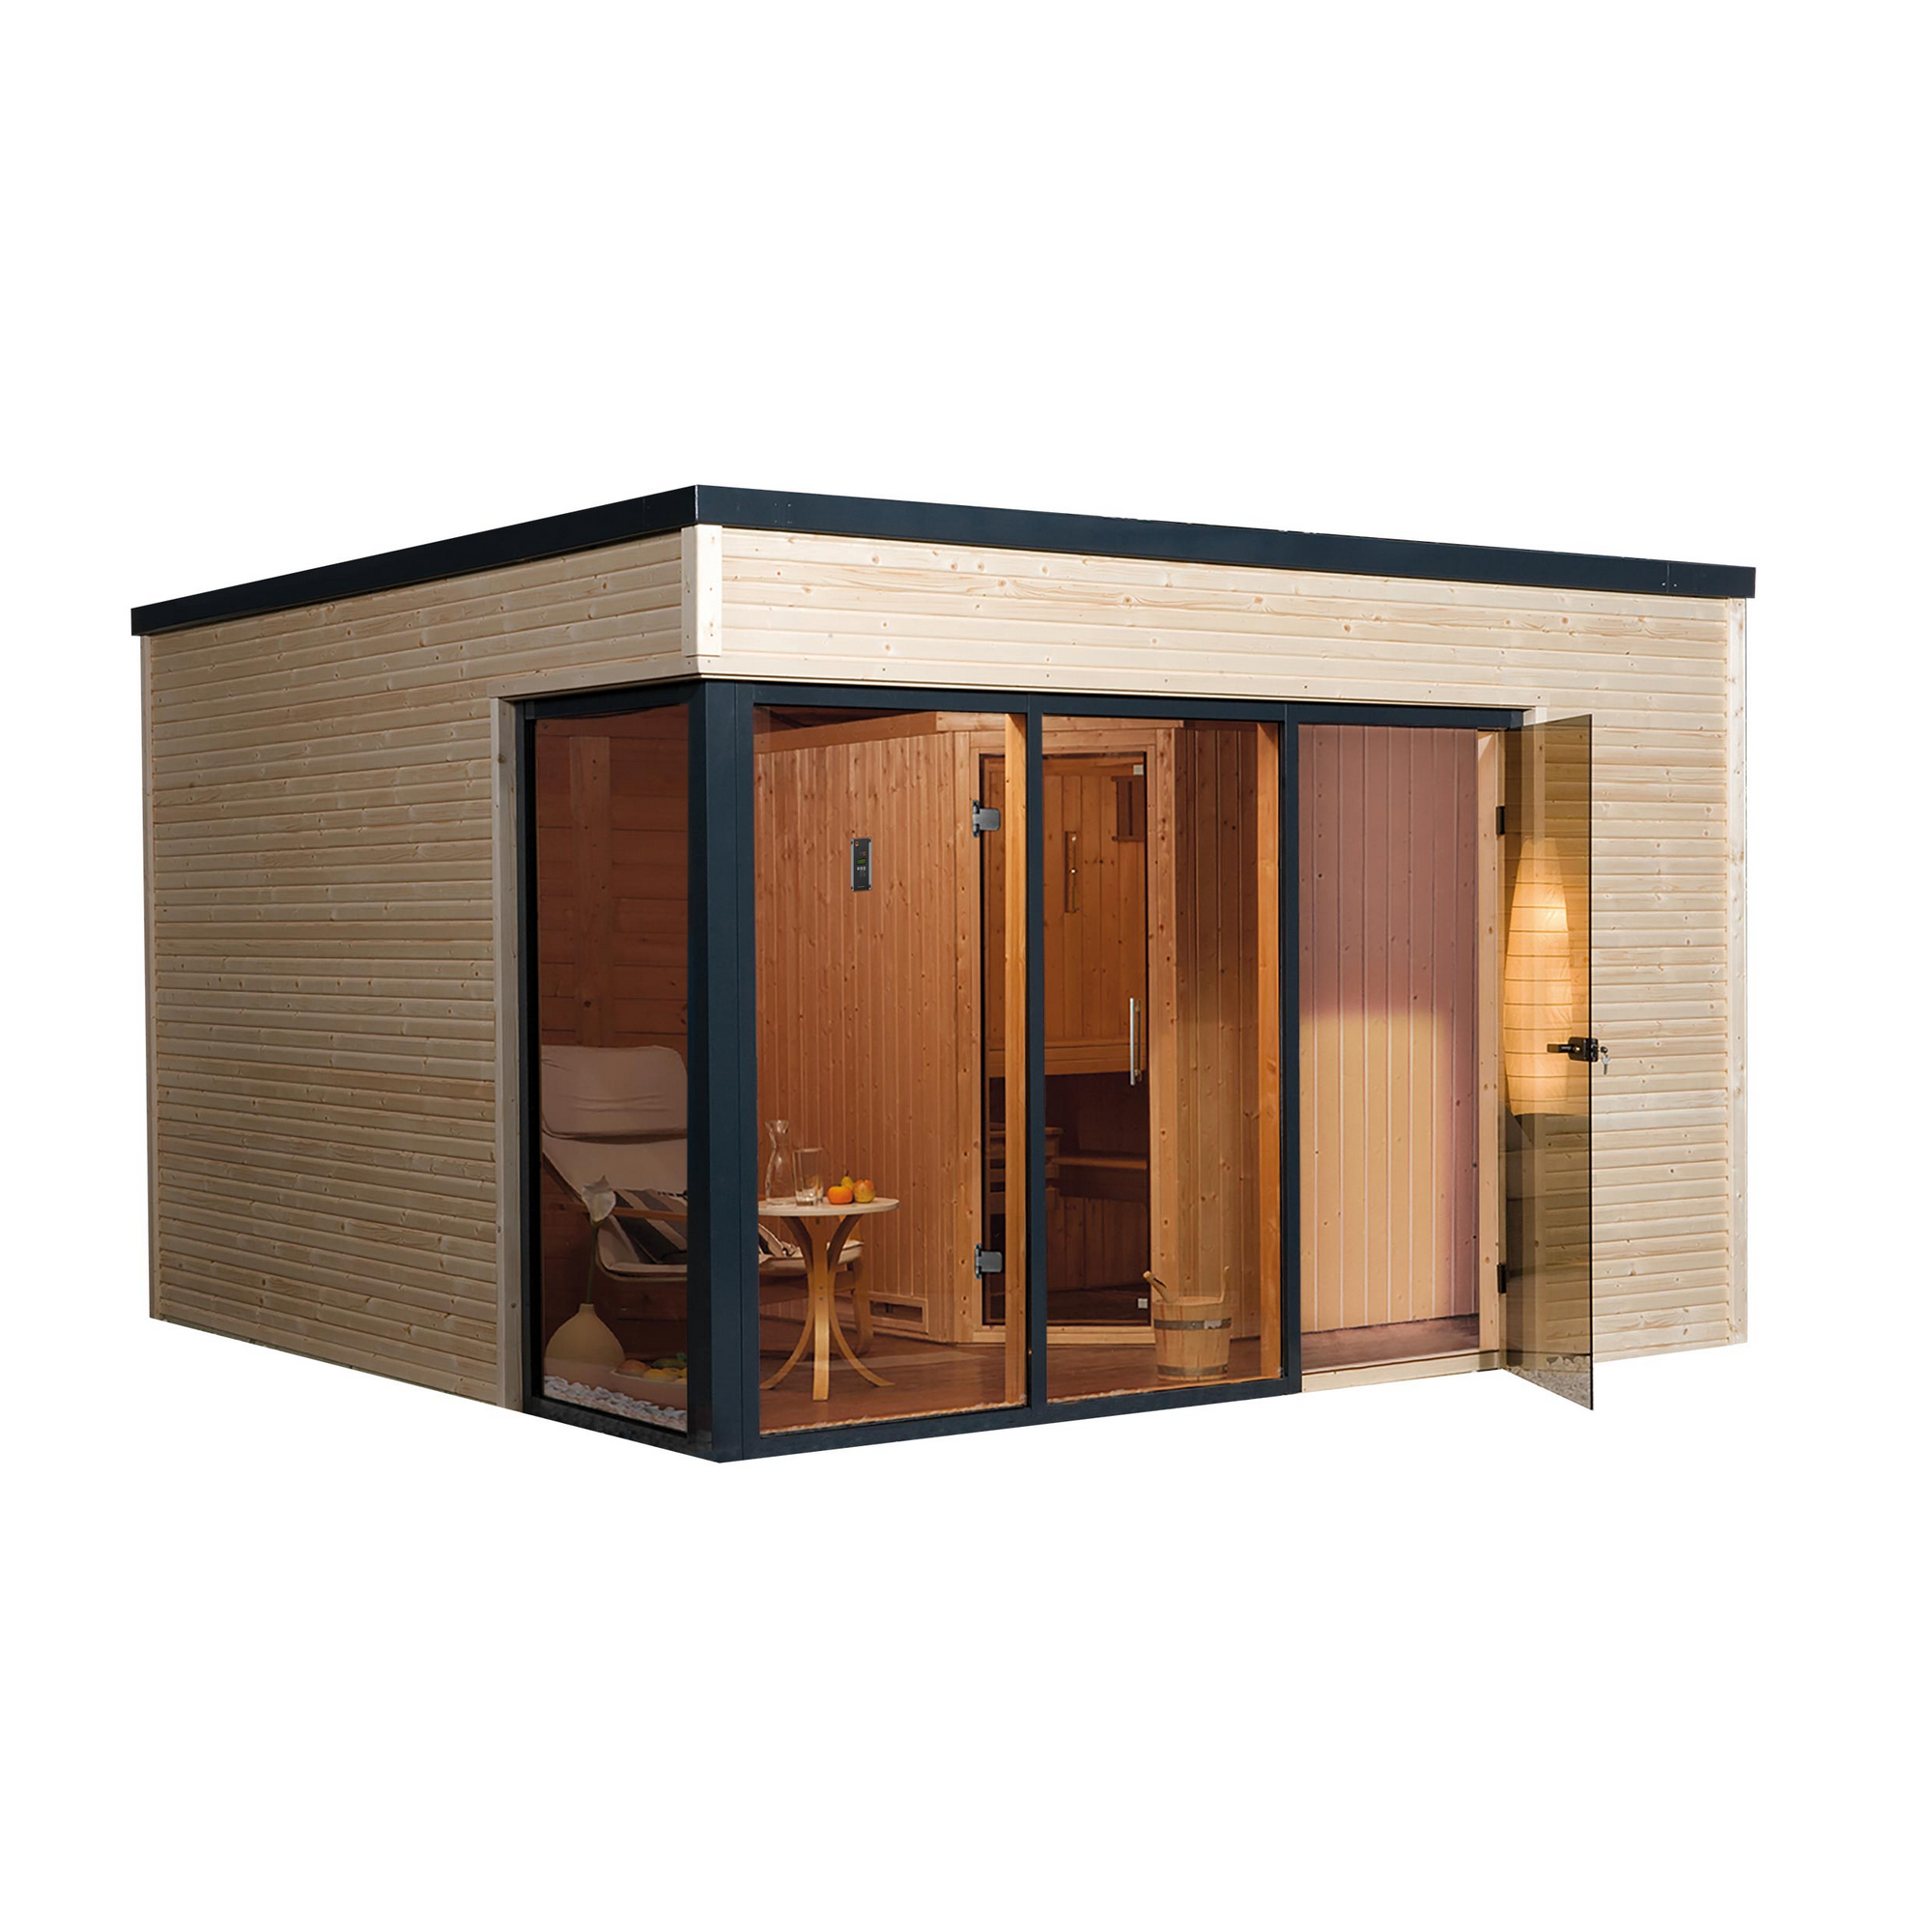 Design-Saunahaus 'Cubilis' mit Sauna Varberg 3 und 7,5 kW OS-Ofenset, Steuerung 380 x 300 x 249 cm + product picture